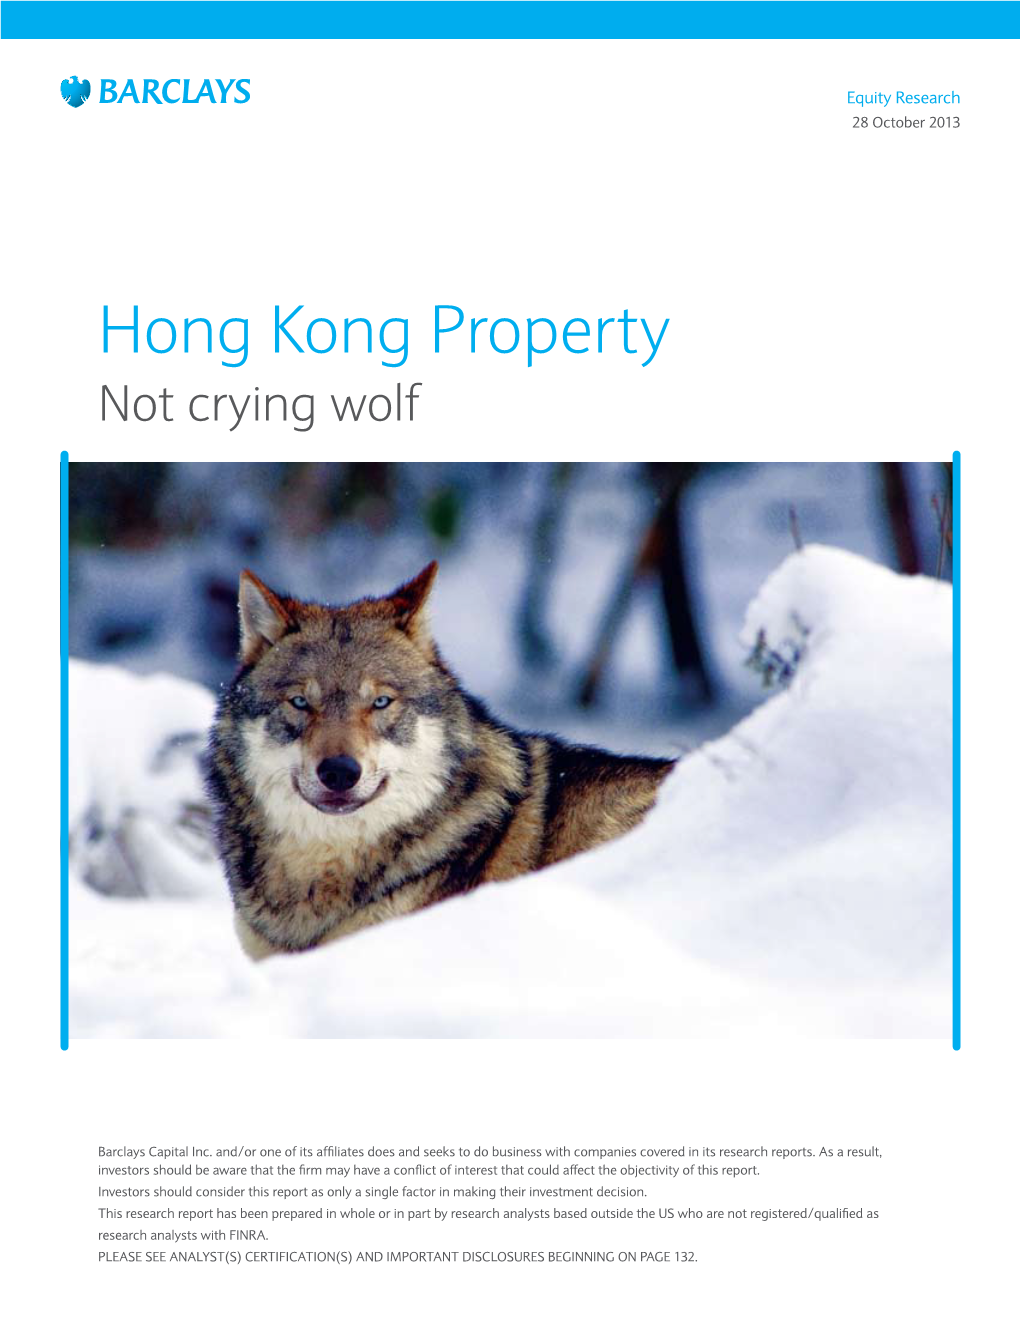 Hong Kong Property: Not Crying Wolf